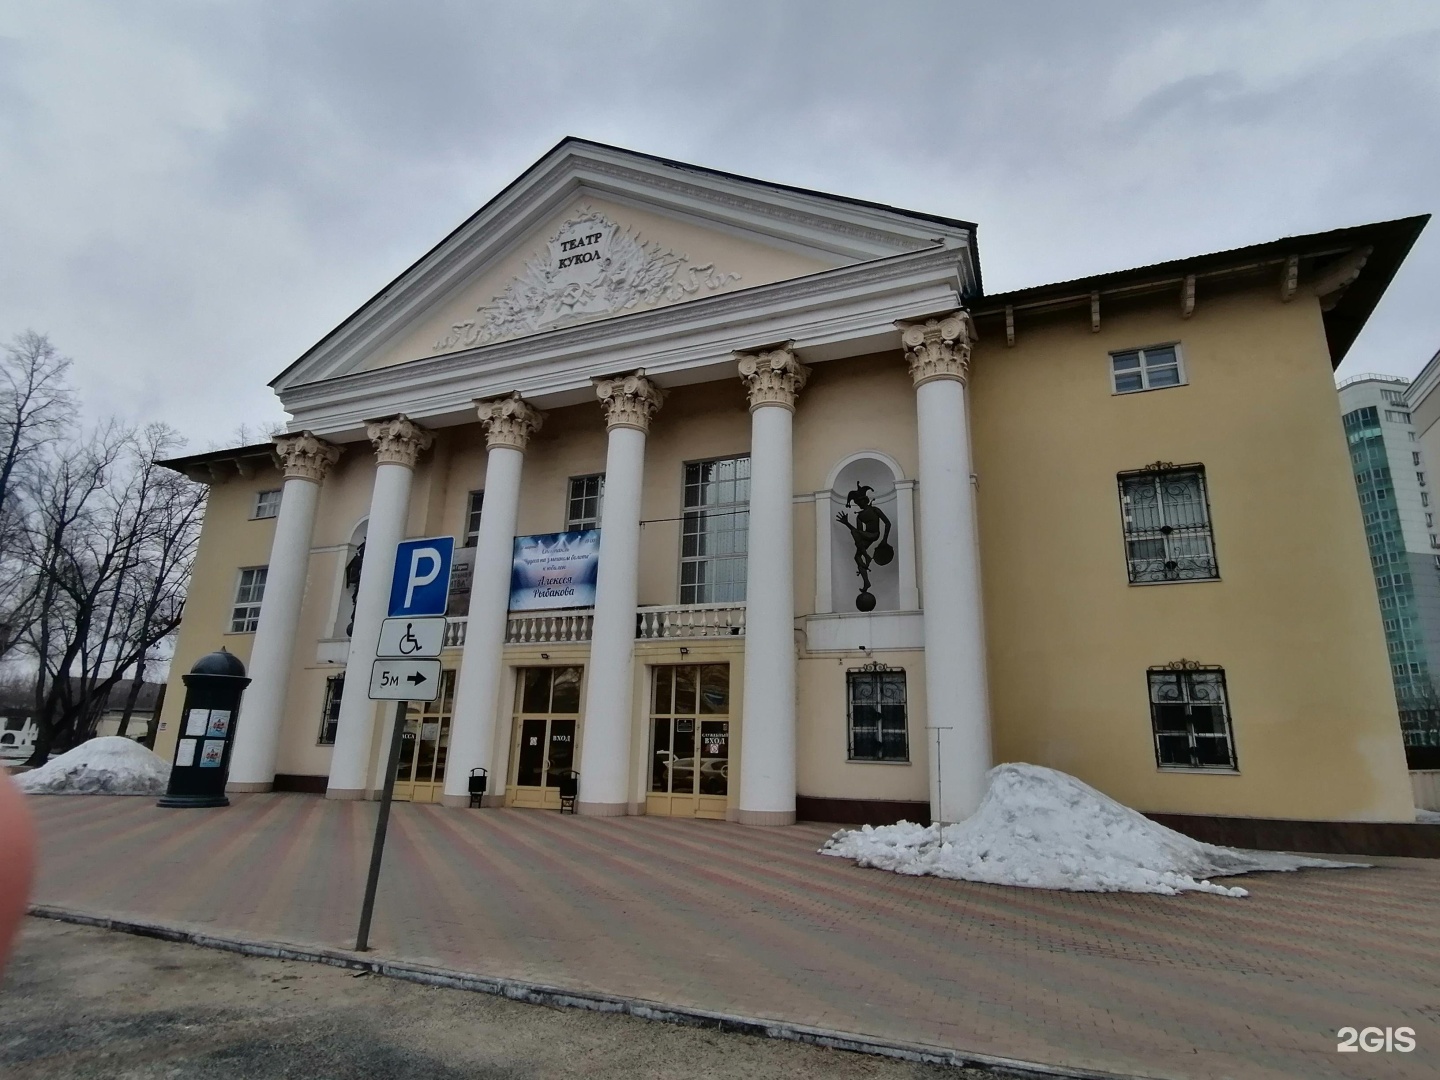 Липецкий государственный театр